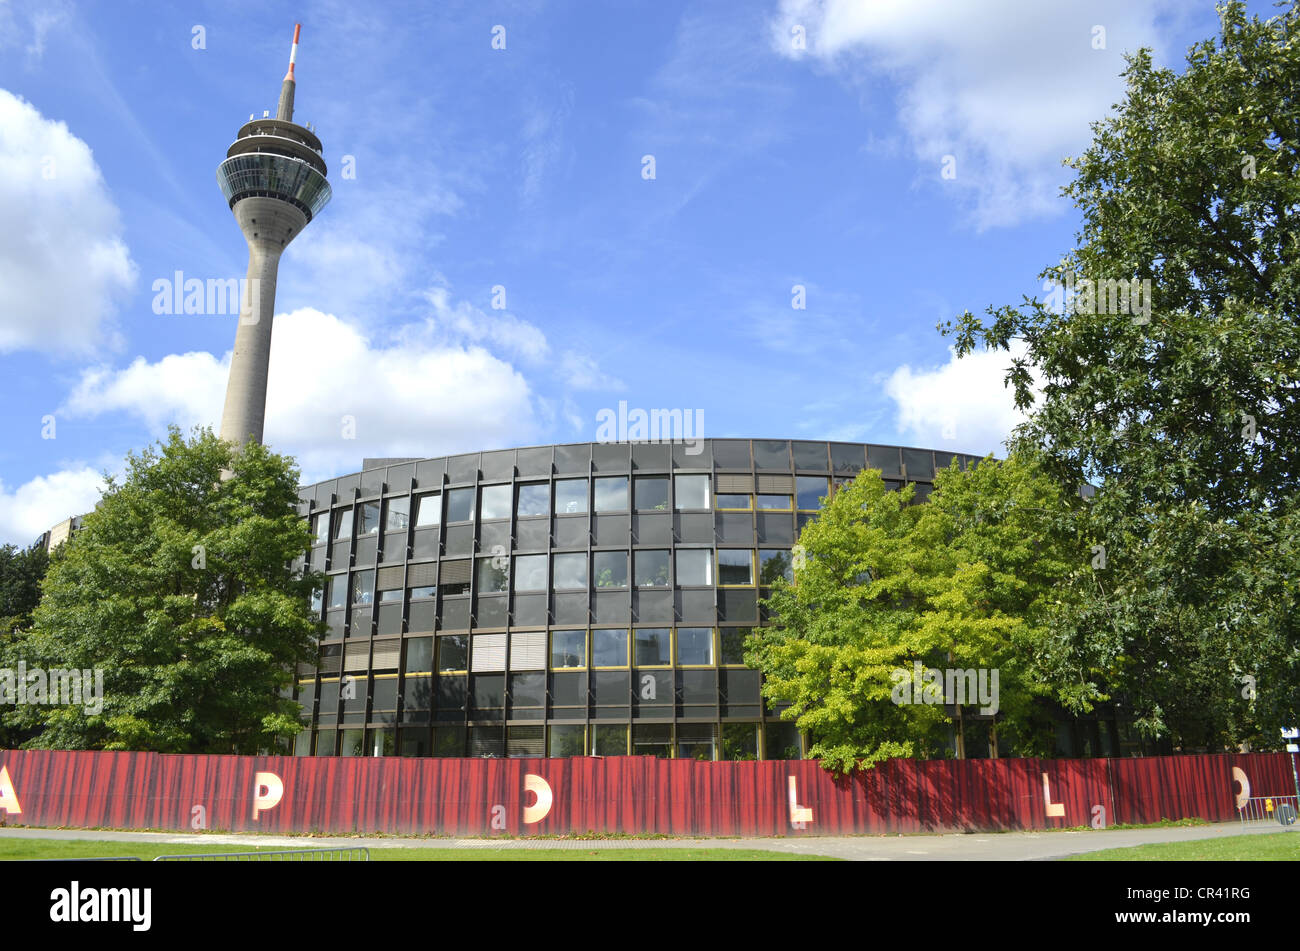 Landtag, parlement de l'état et la Rheinturm Tour, Rhin, Düsseldorf, Rhénanie du Nord-Westphalie, Allemagne, Europe Banque D'Images